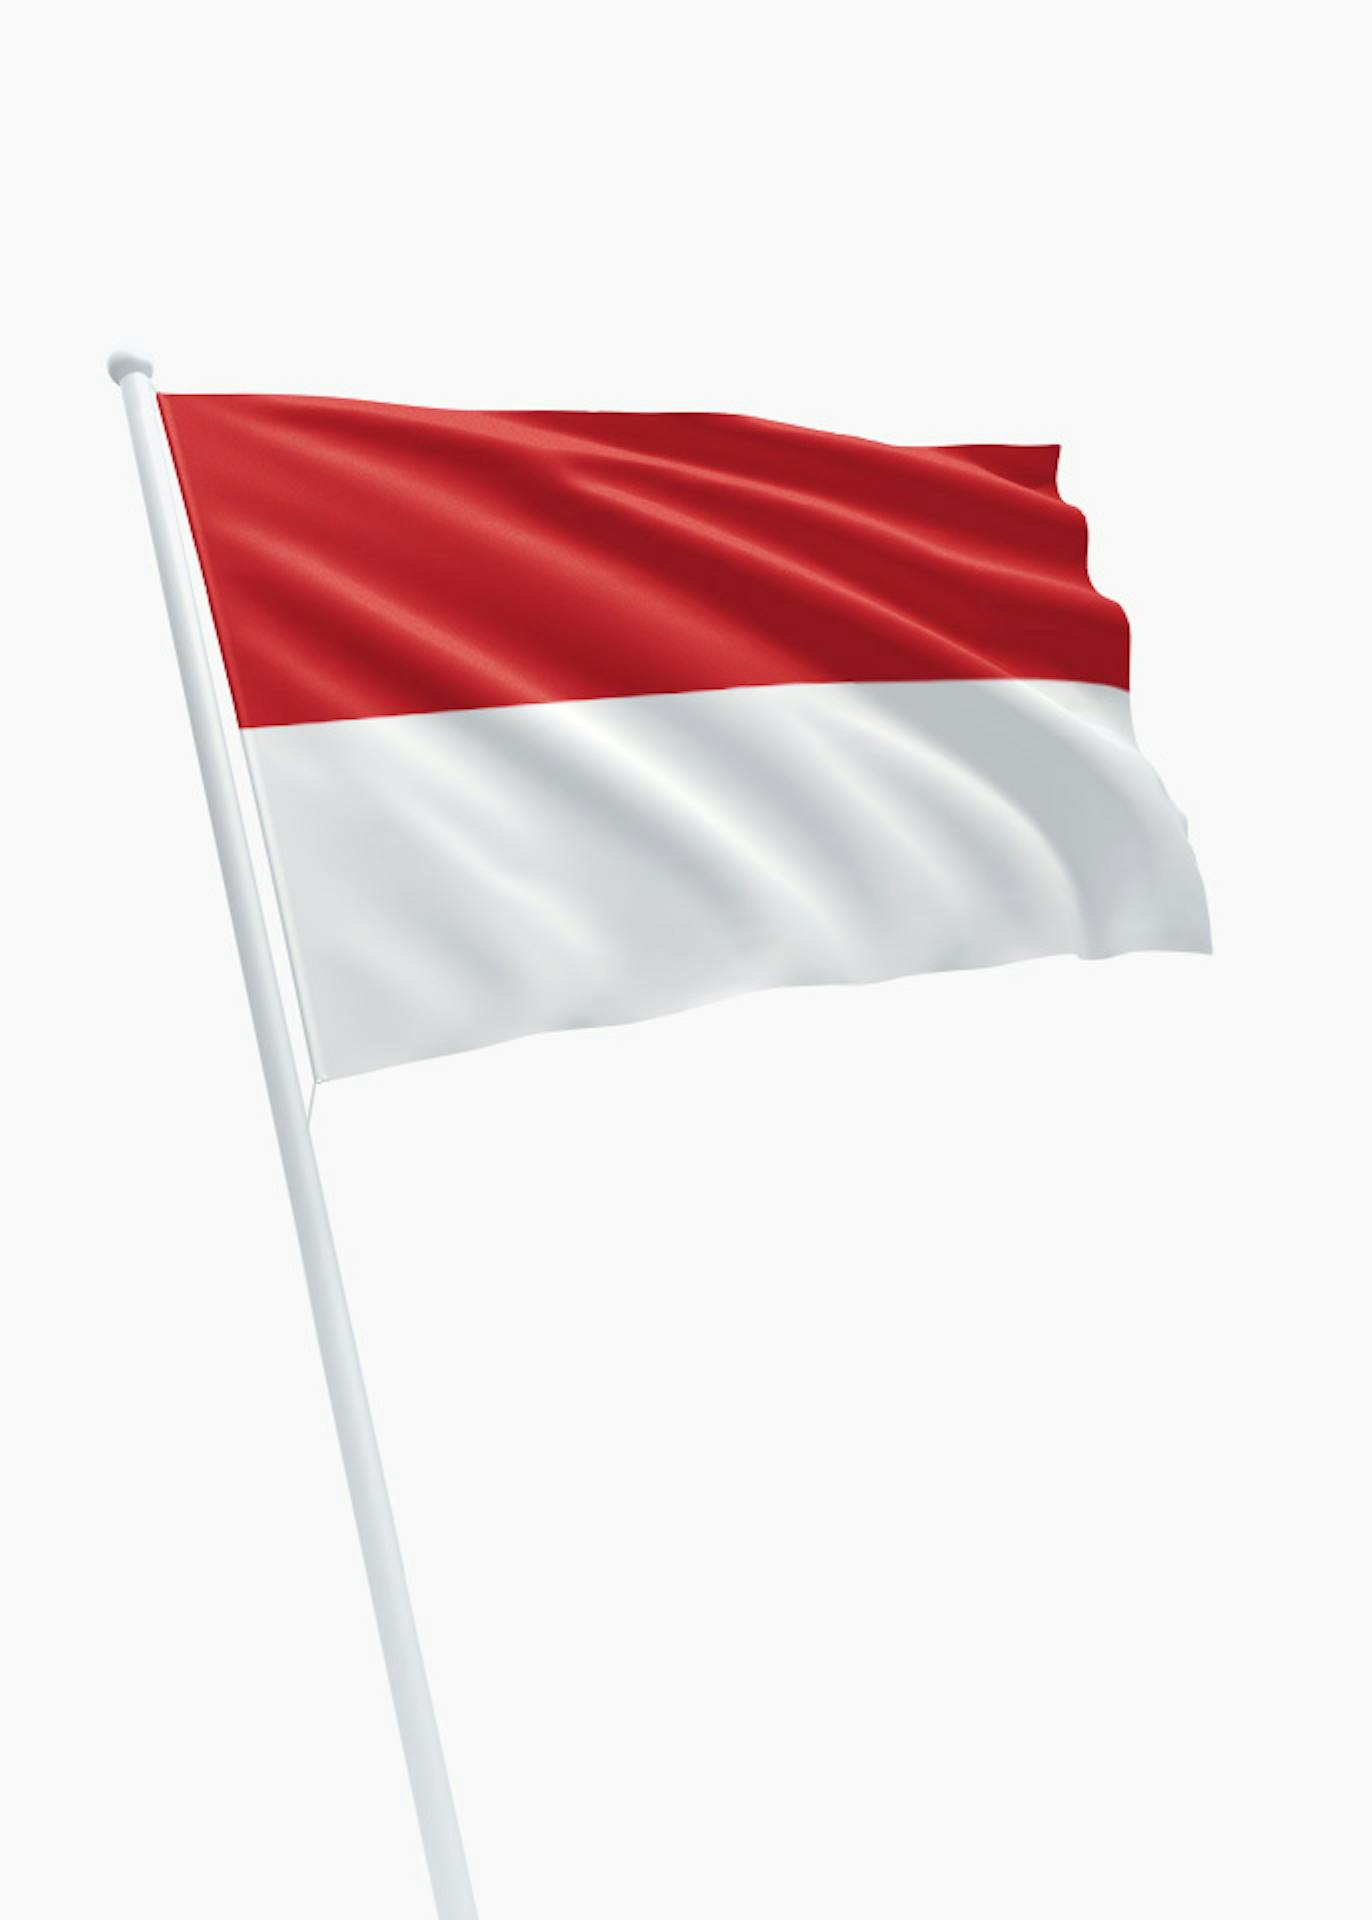 burgemeester Amazon Jungle landbouw Indonesische vlag kopen? Dé specialist in vlaggen! - DVC